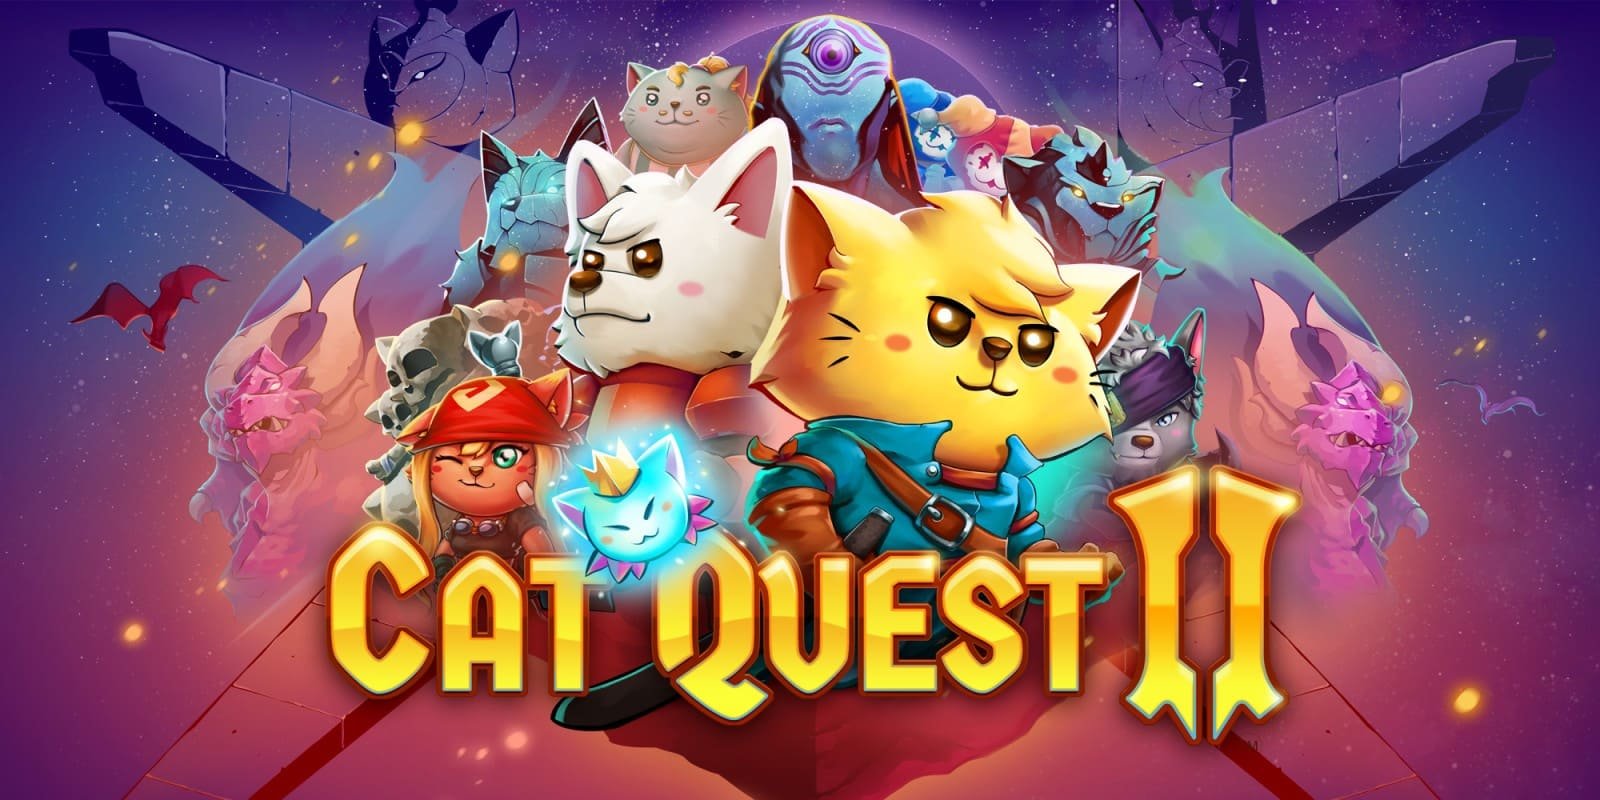 Review Cat Quest 2 (PS4) - A auventura miautástica continua! - Jogando  Casualmente